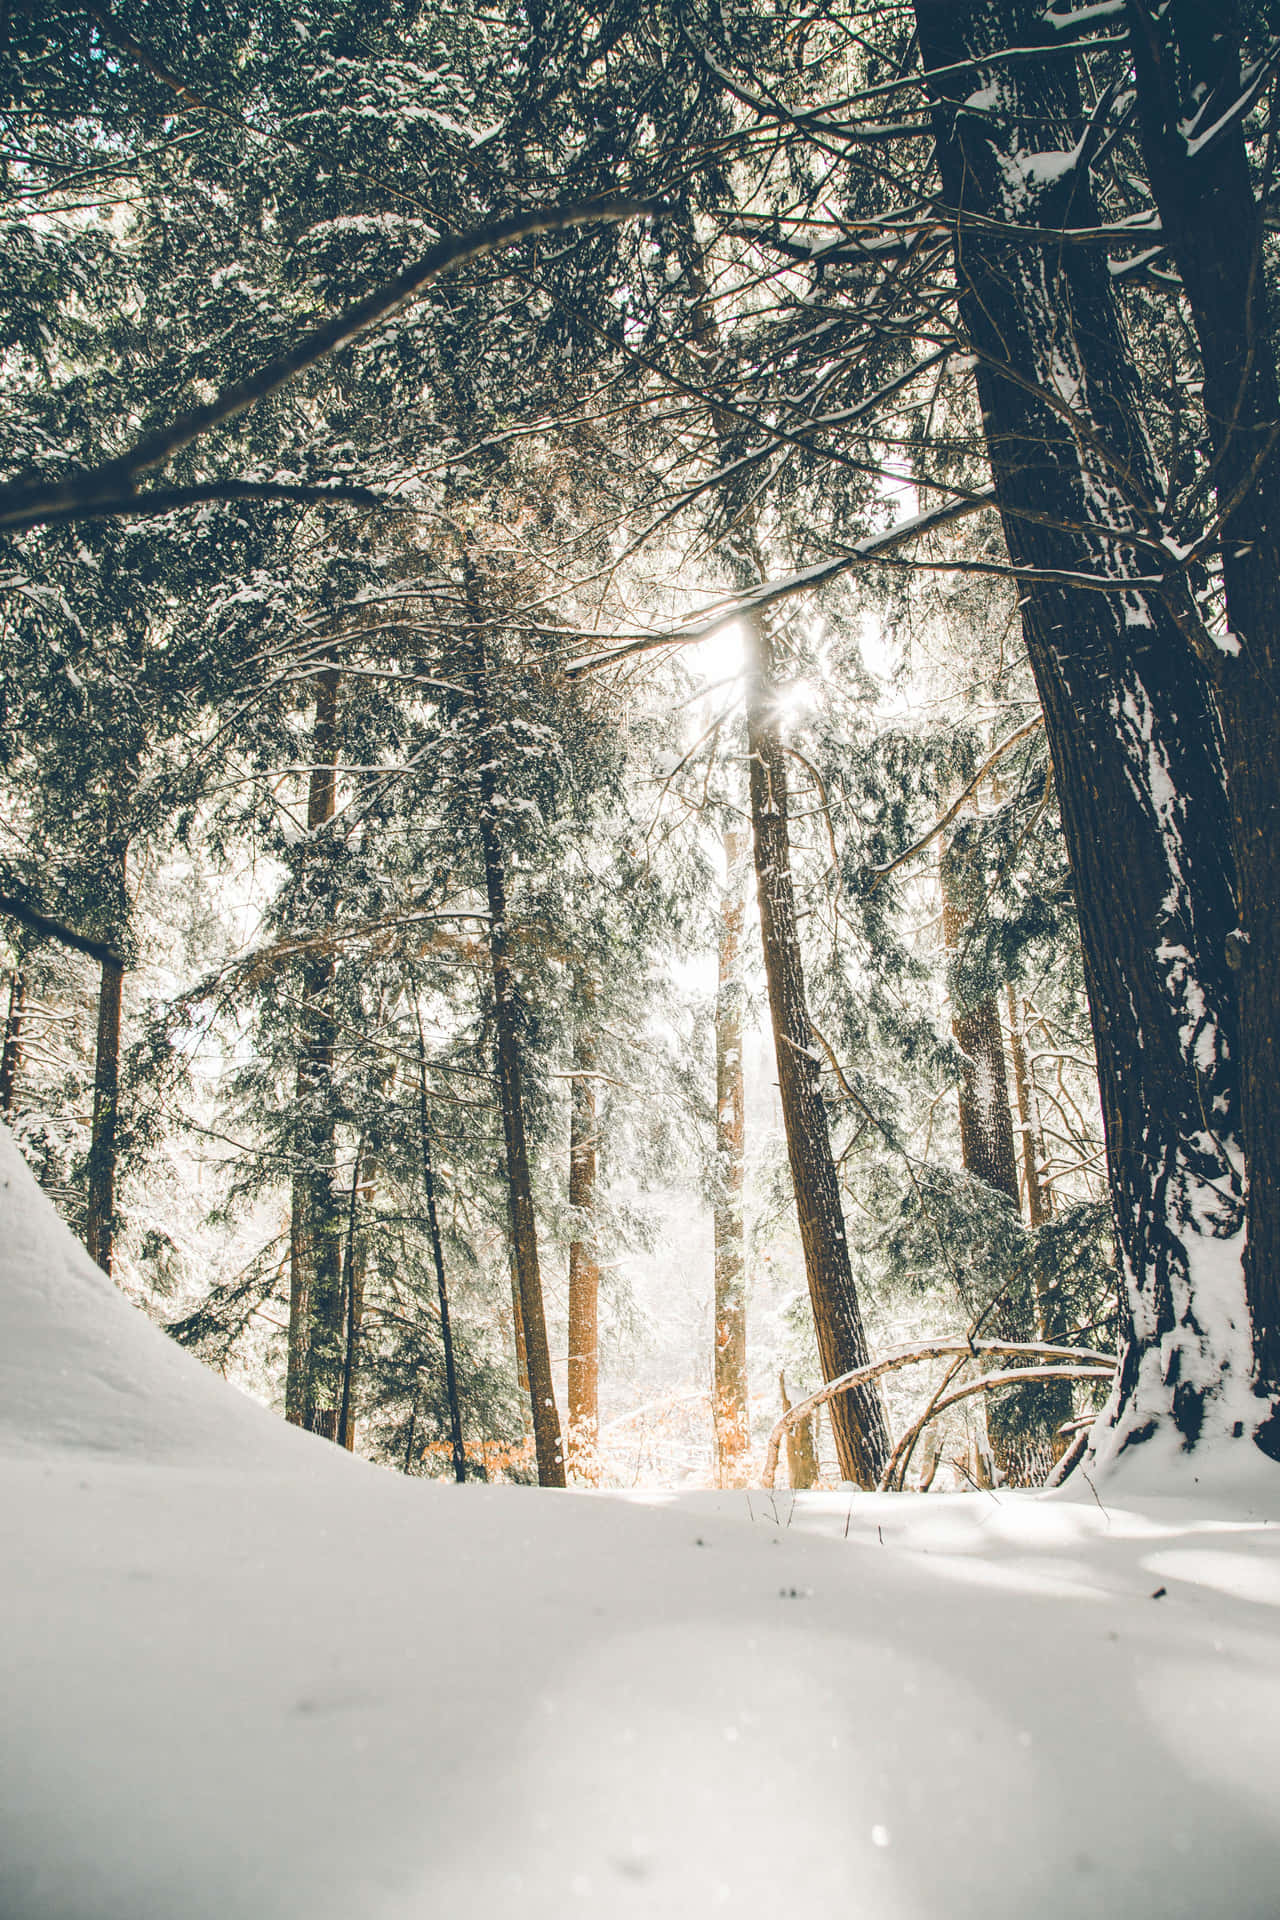 Unbosque Cubierto De Nieve Con La Luz Del Sol Filtrándose Entre Los Árboles